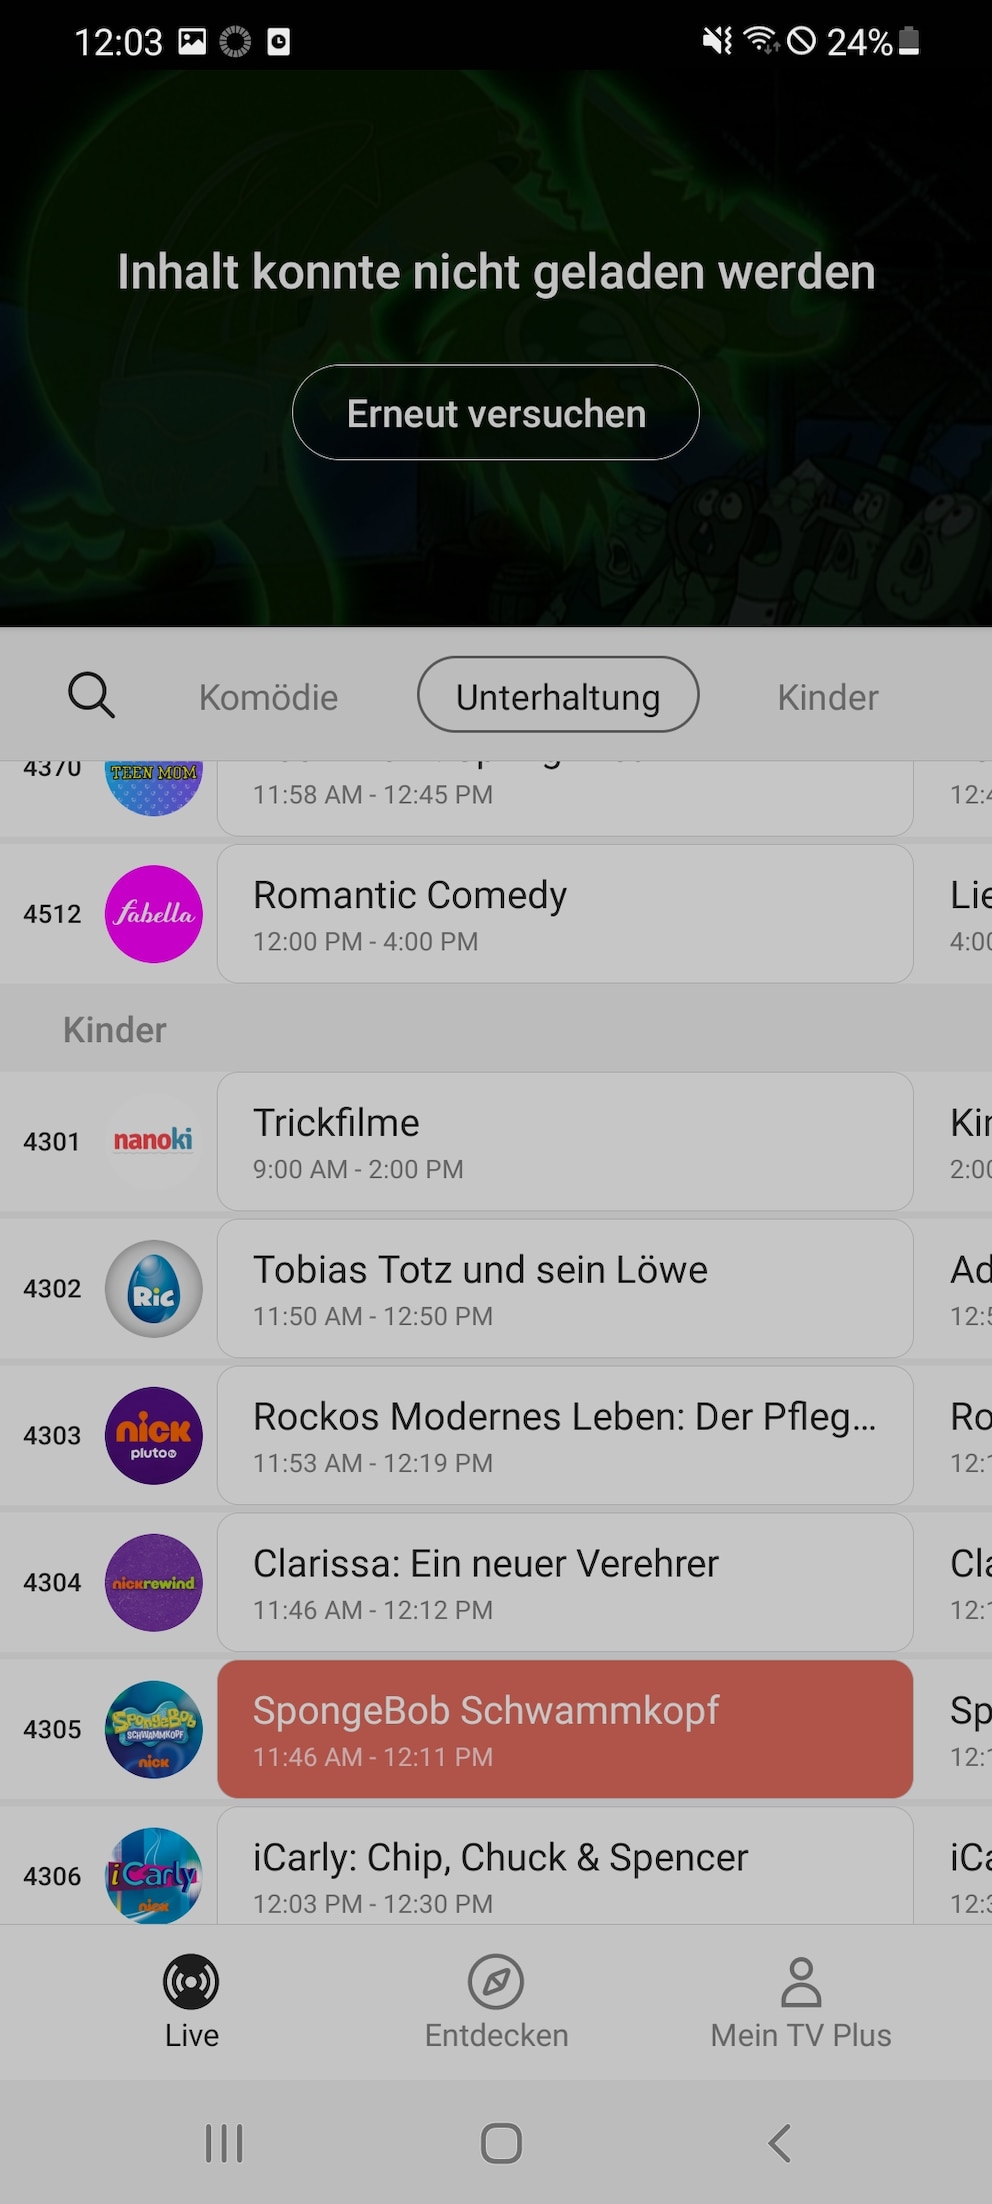 Samsung TV Plus erfordert Registrierung für einige Kanäle